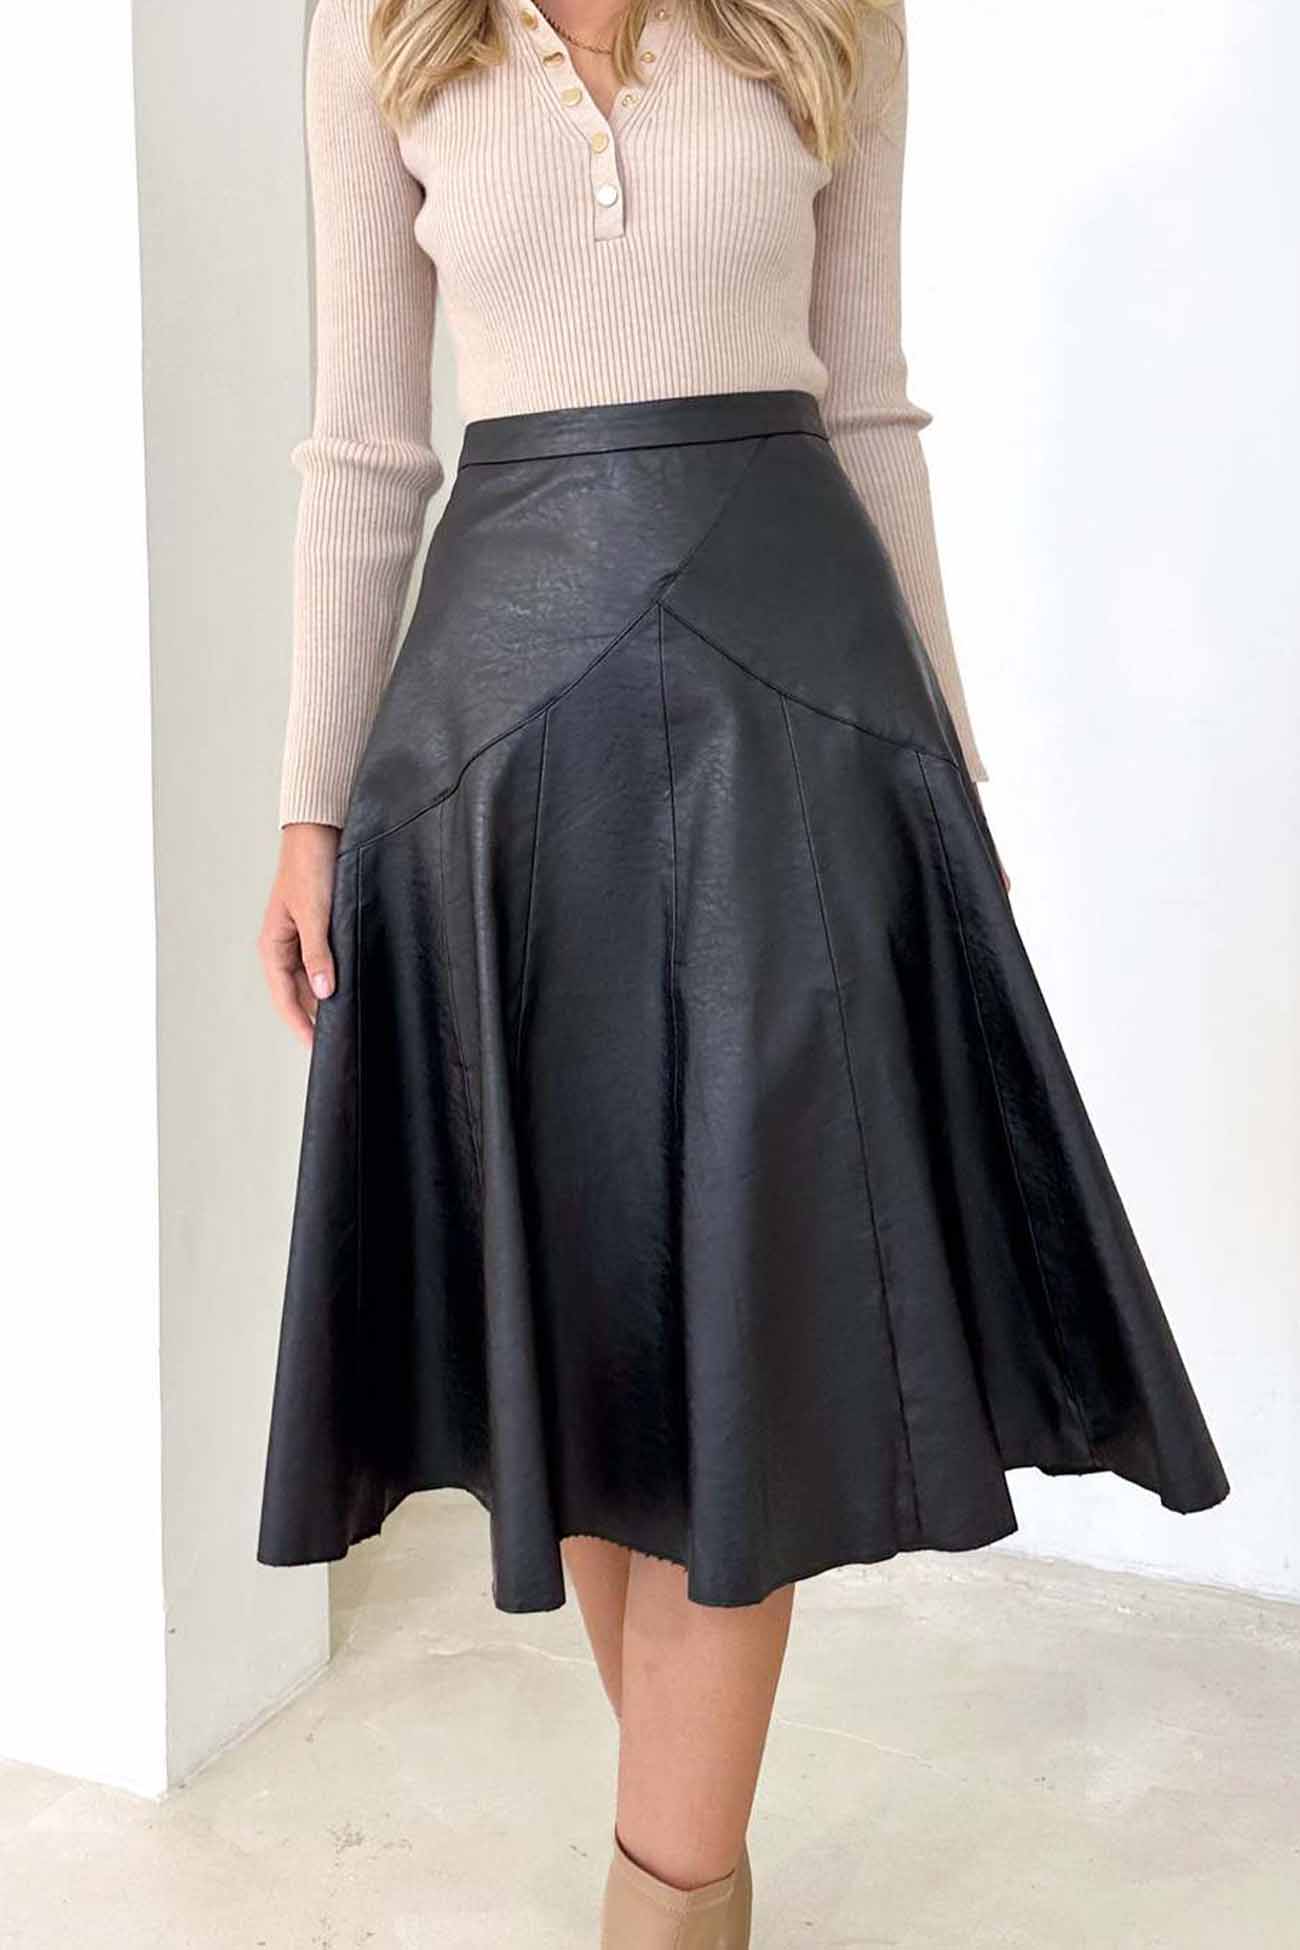 Leather High Waist Pleated Midi Skirt